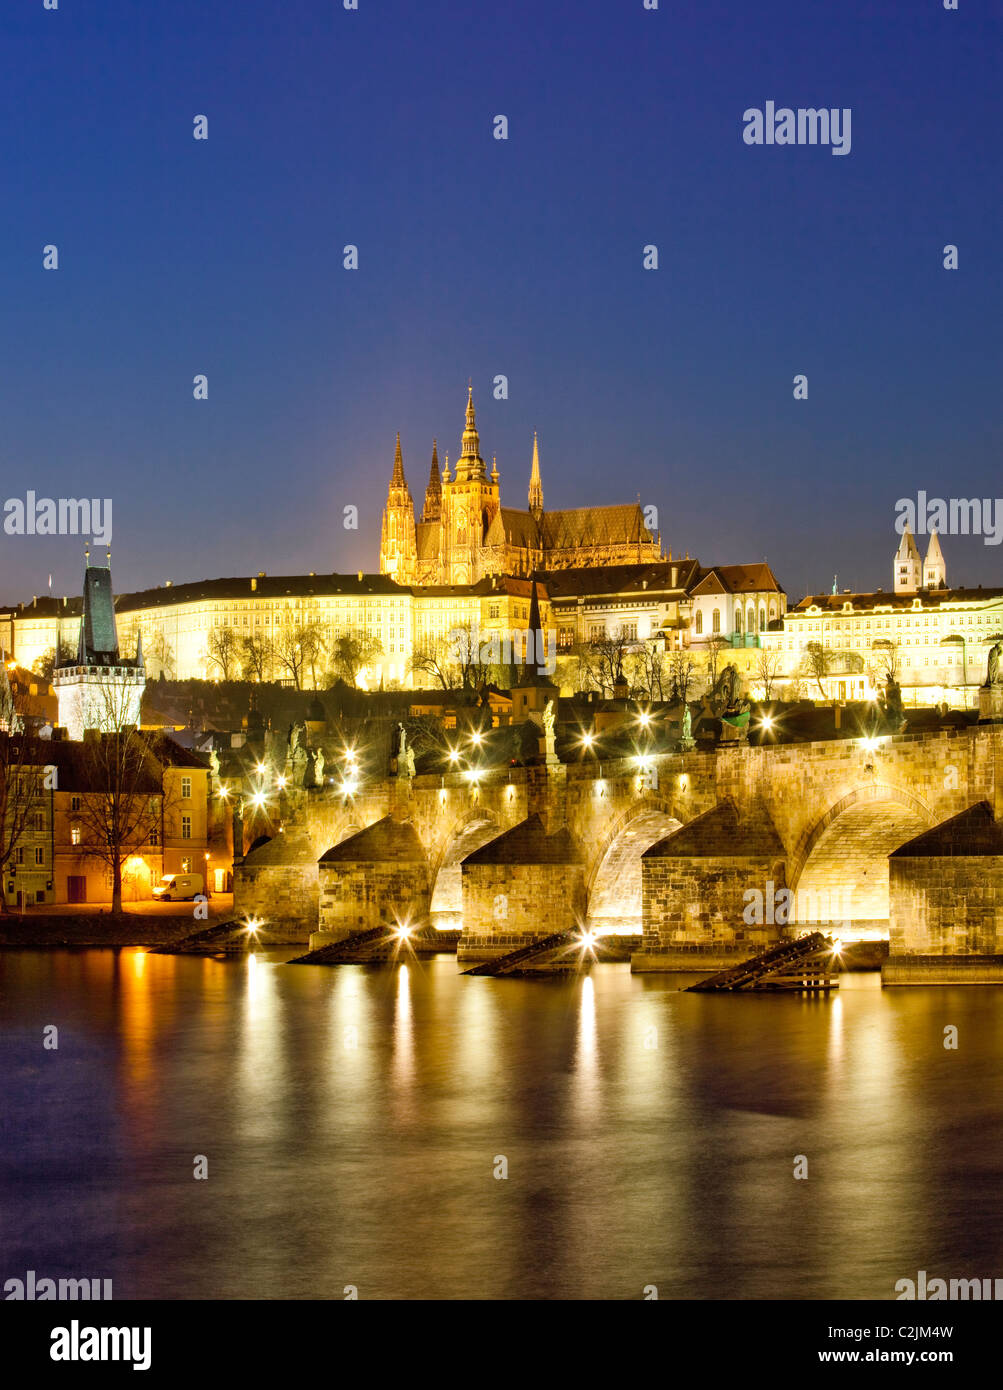 República Checa, Praga - Puente de Carlos y el castillo de hradcany al atardecer Foto de stock